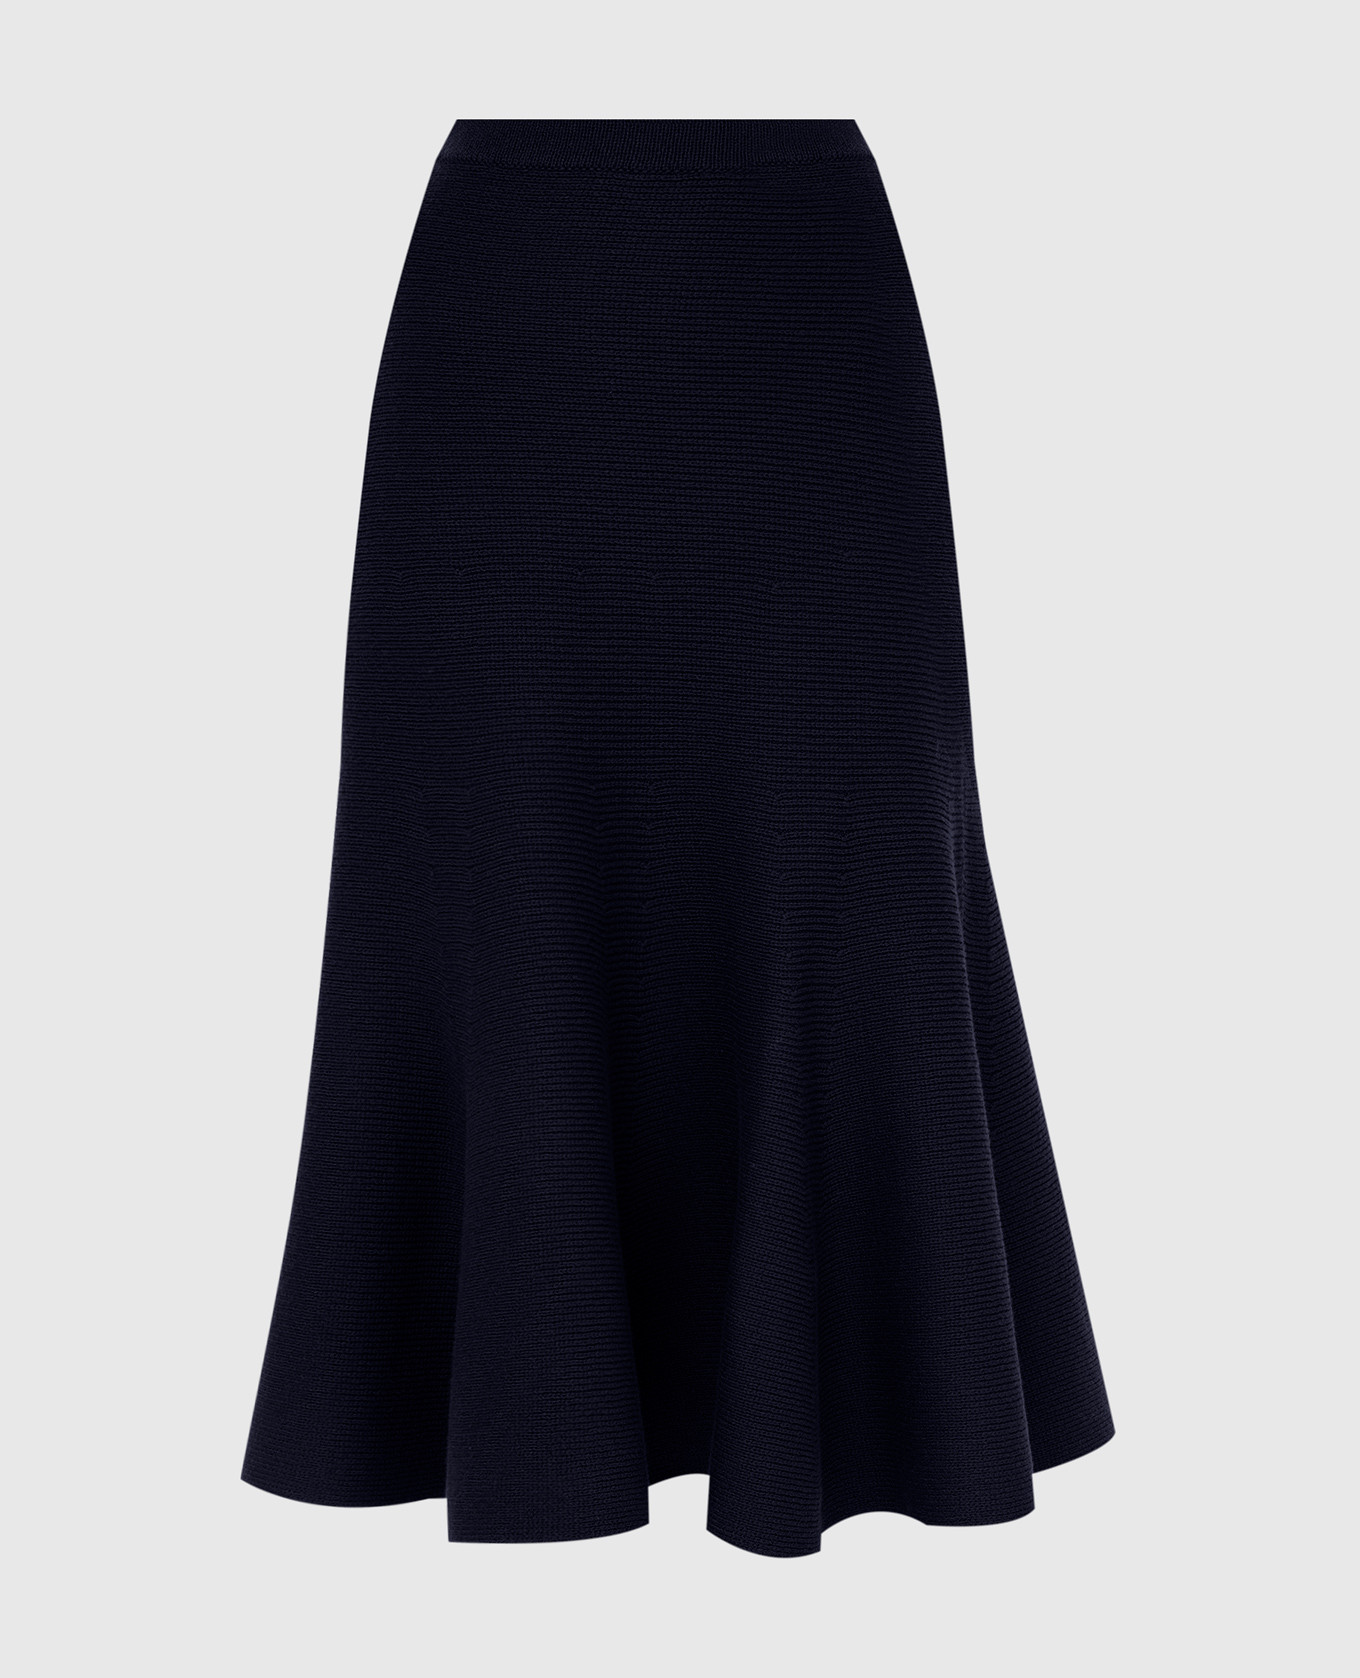 Olive navy merino wool skirt